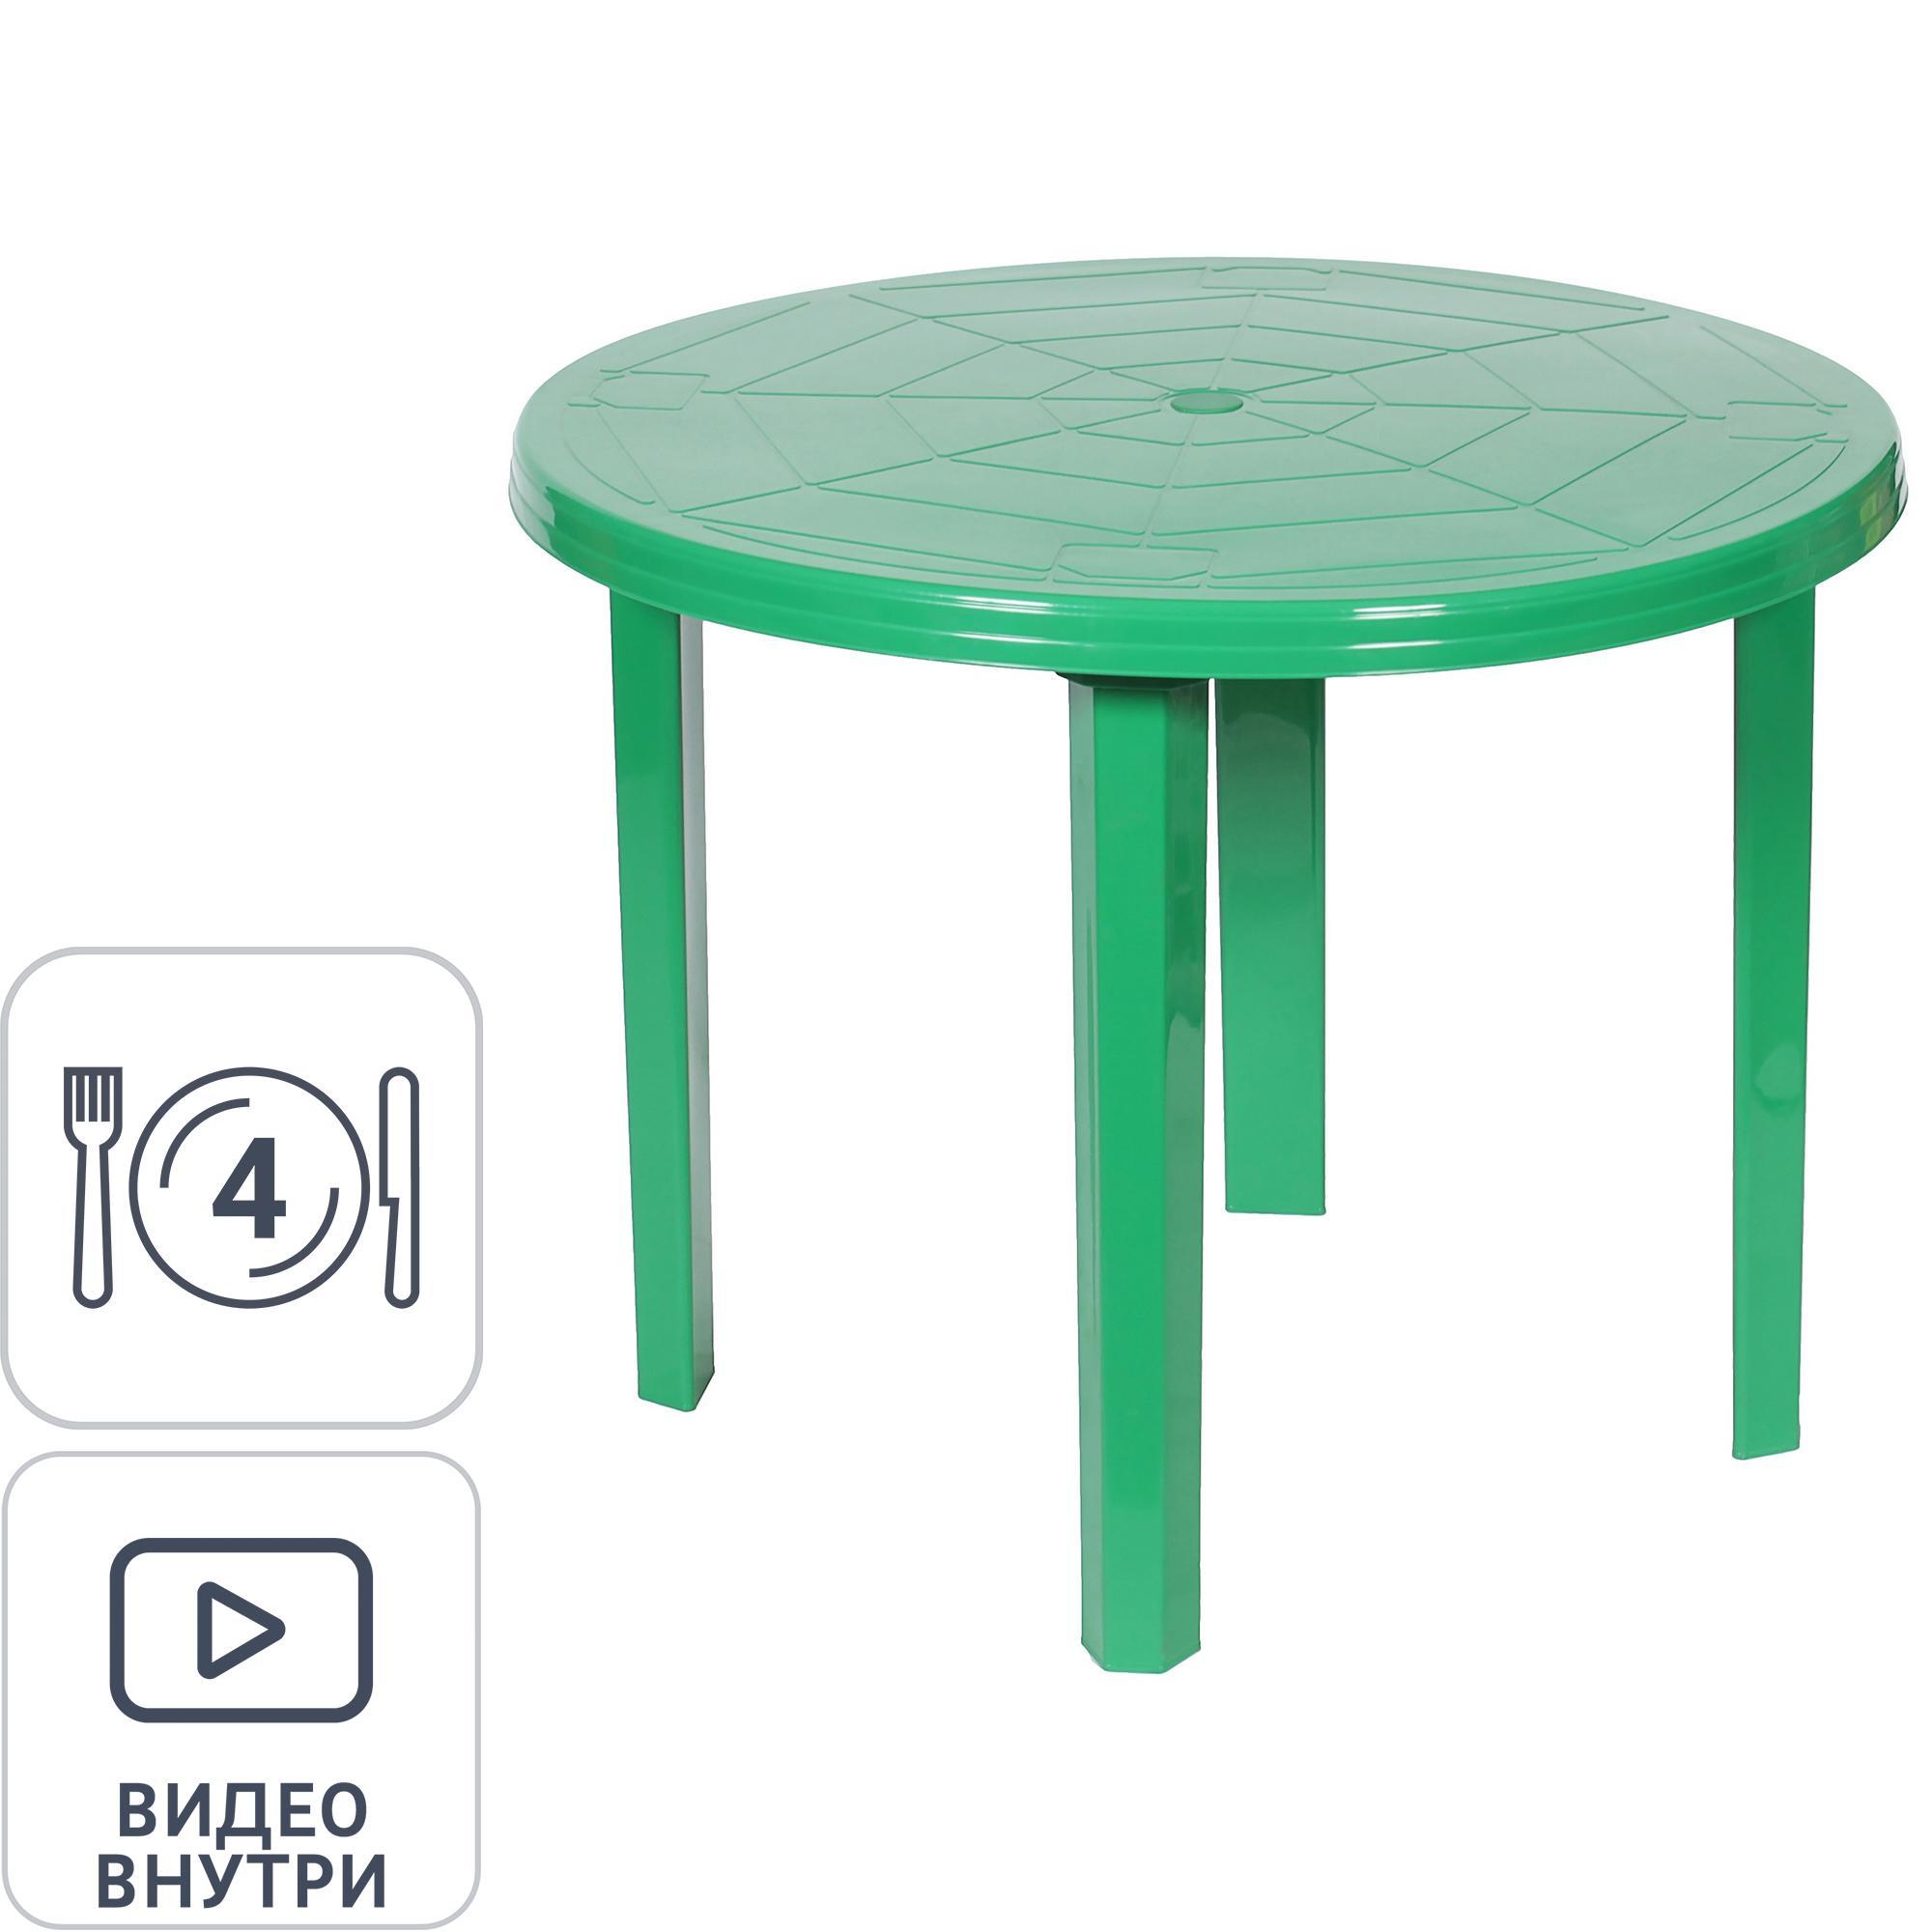 Стол с зеленой вставкой - 85 фото